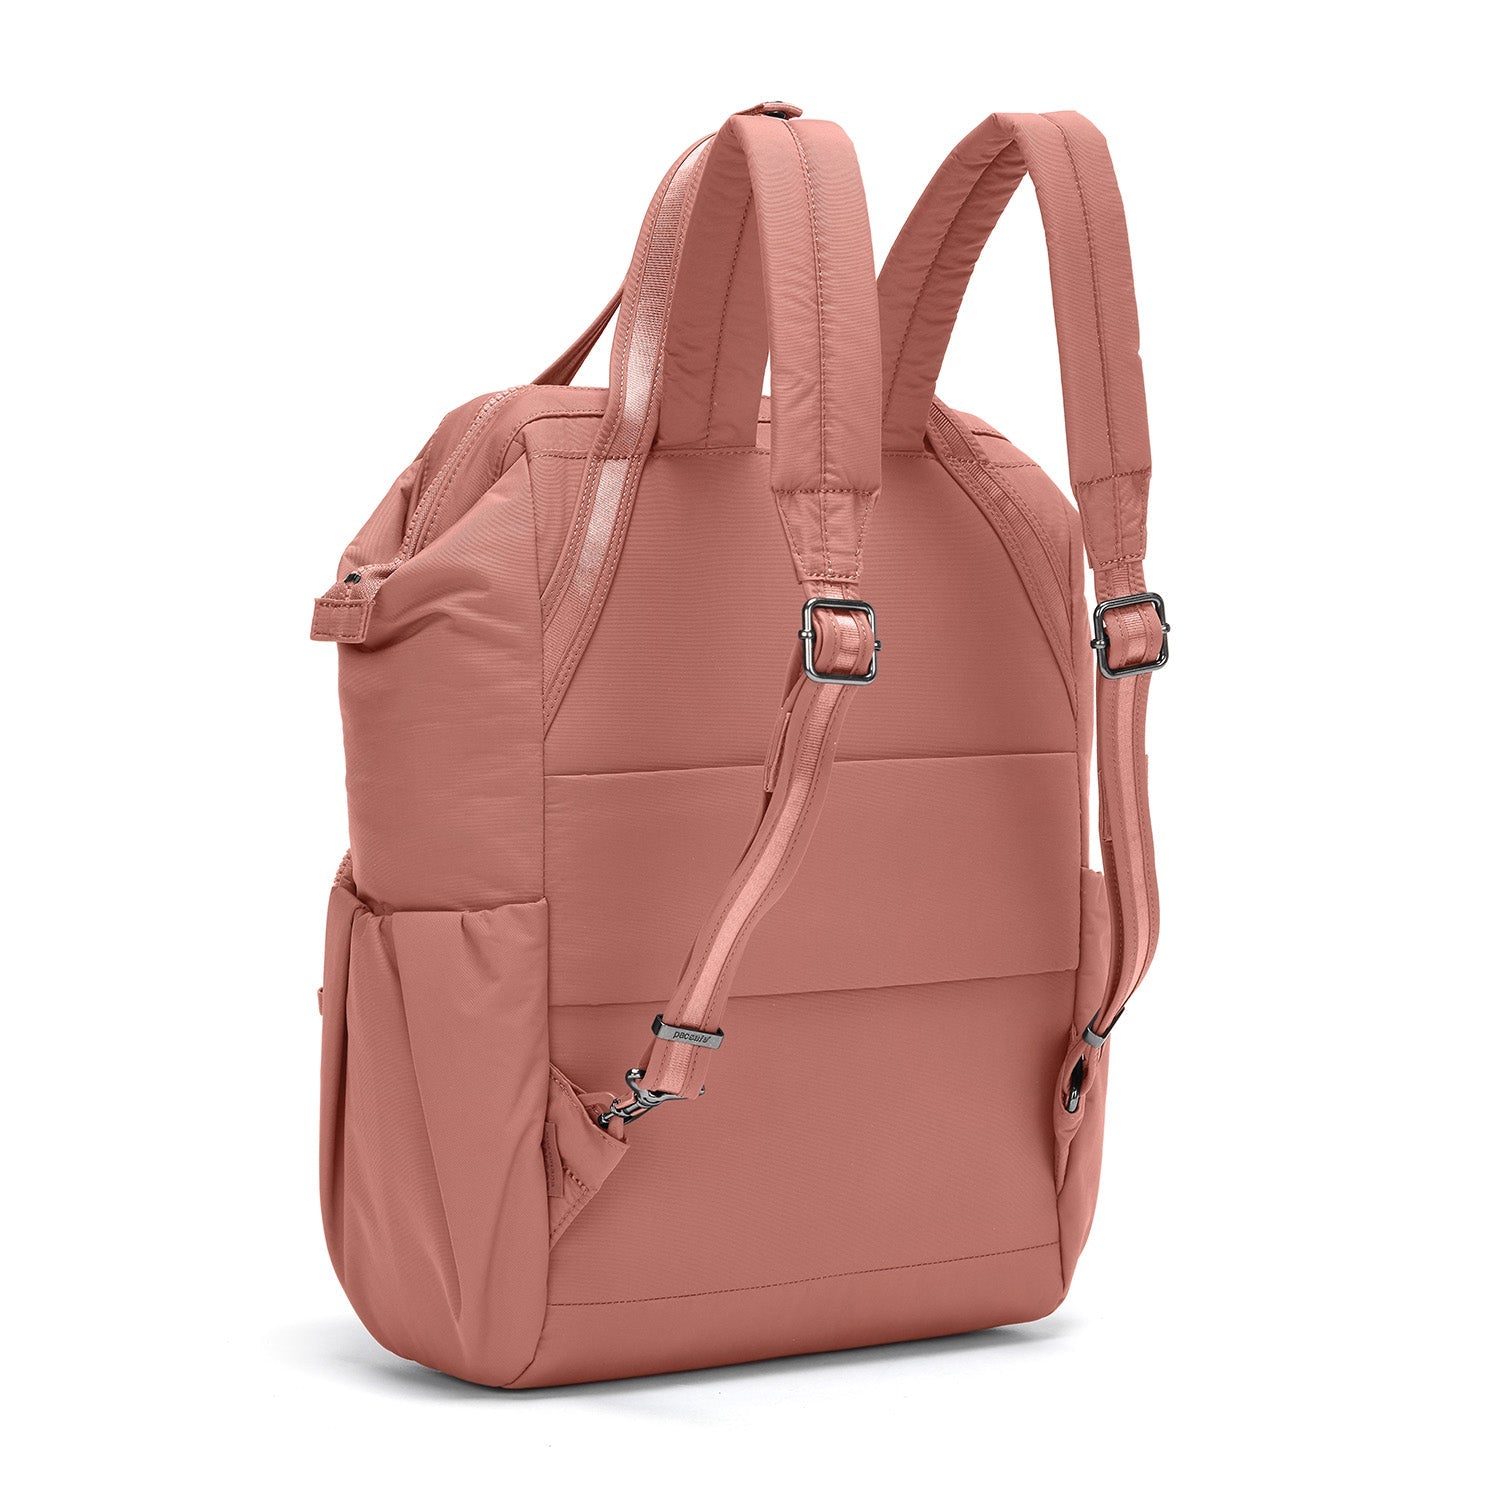 Pacsafe® CX anti-theft backpack | Pacsafe® - Pacsafe – Official